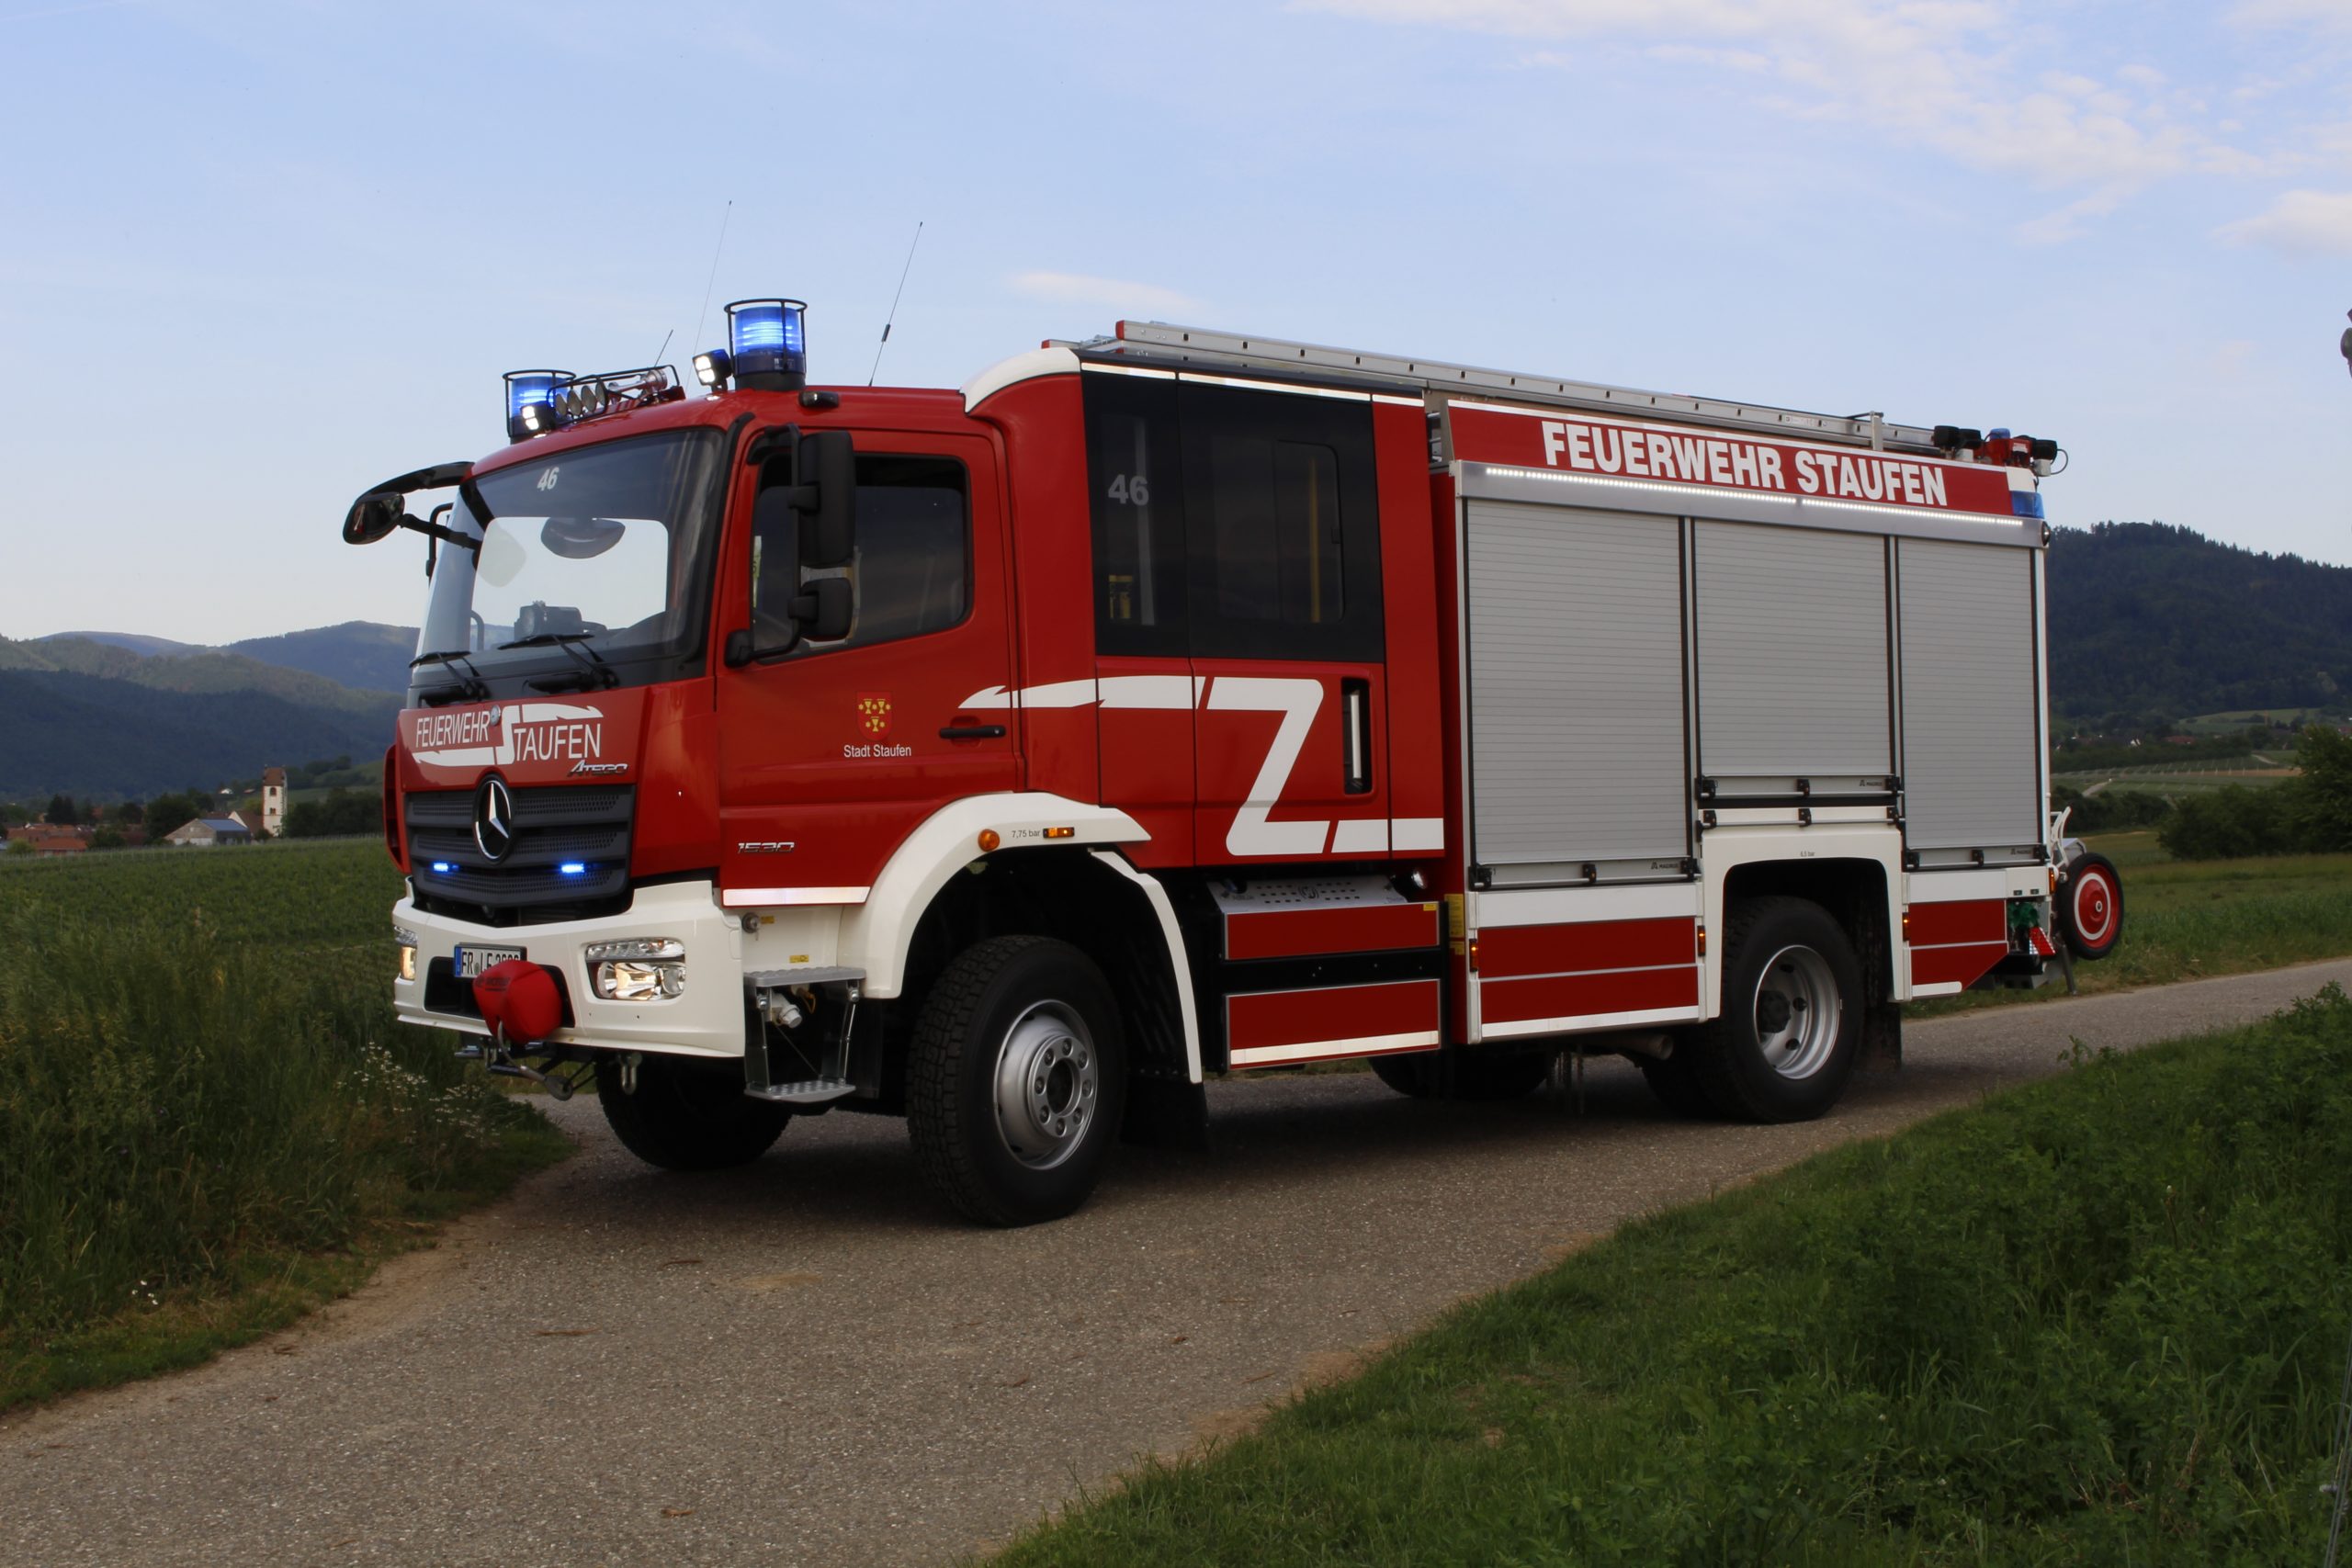 (c) Feuerwehr-staufen.de